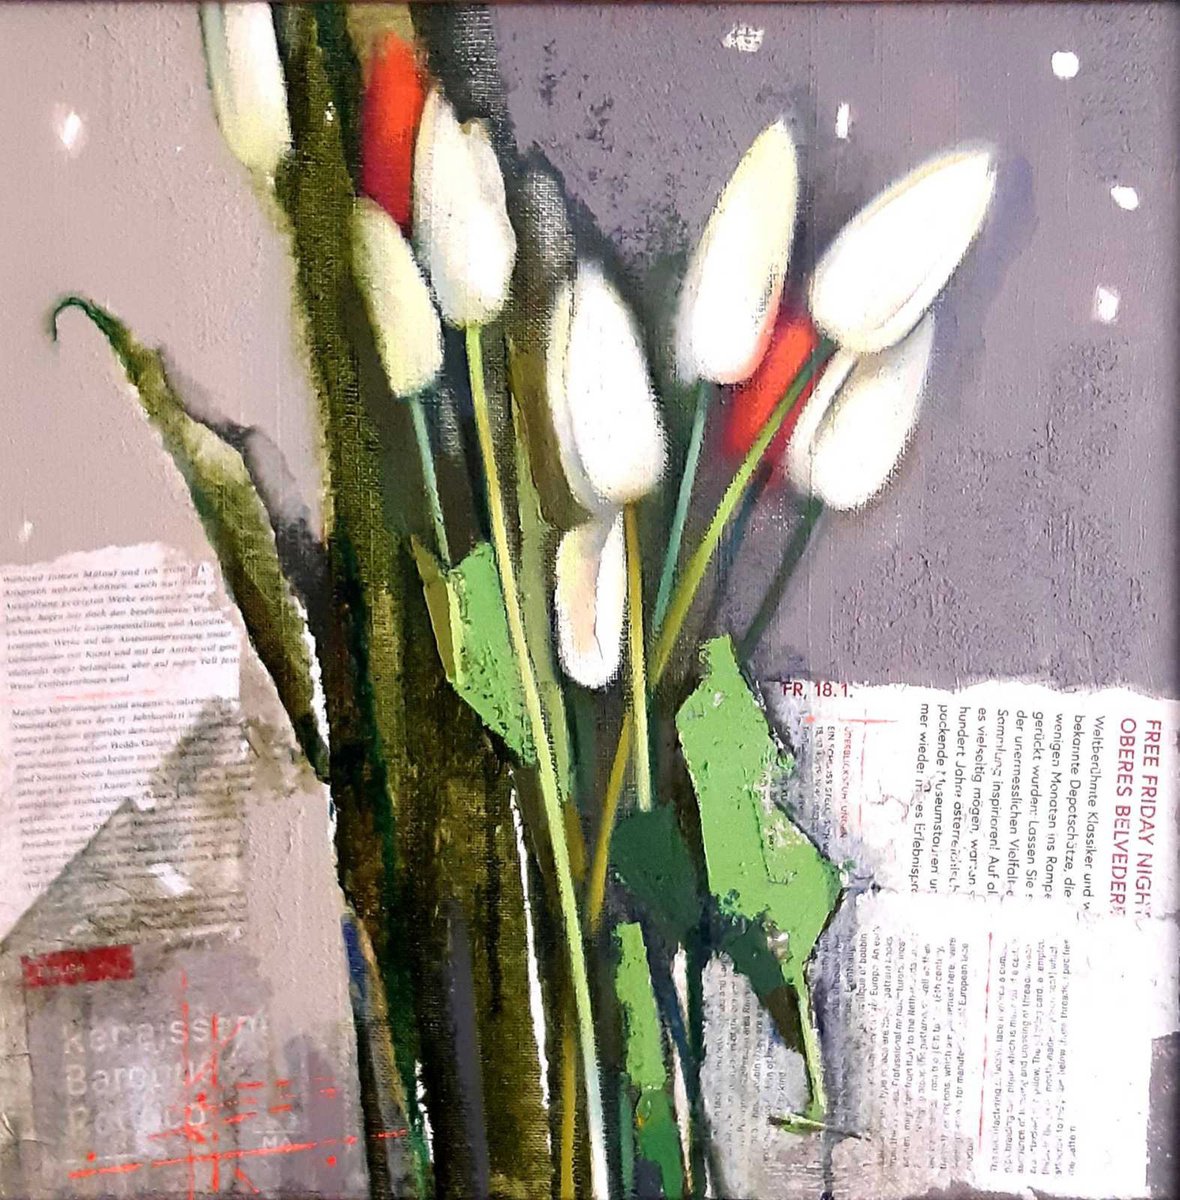 The tulips by Oksana Kornienko